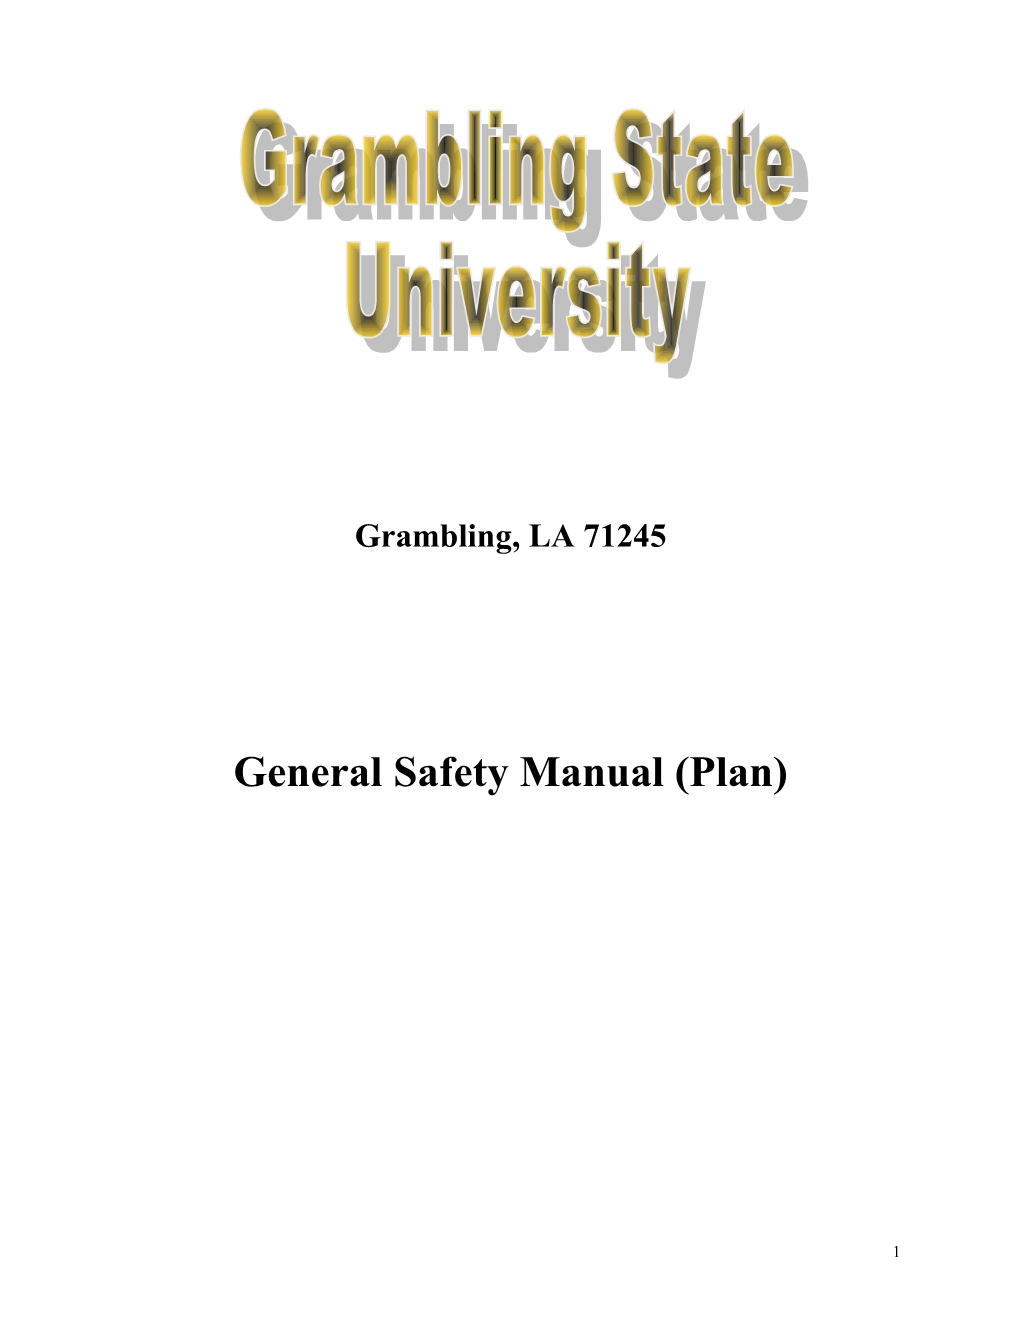 General Safety Manual (Plan)